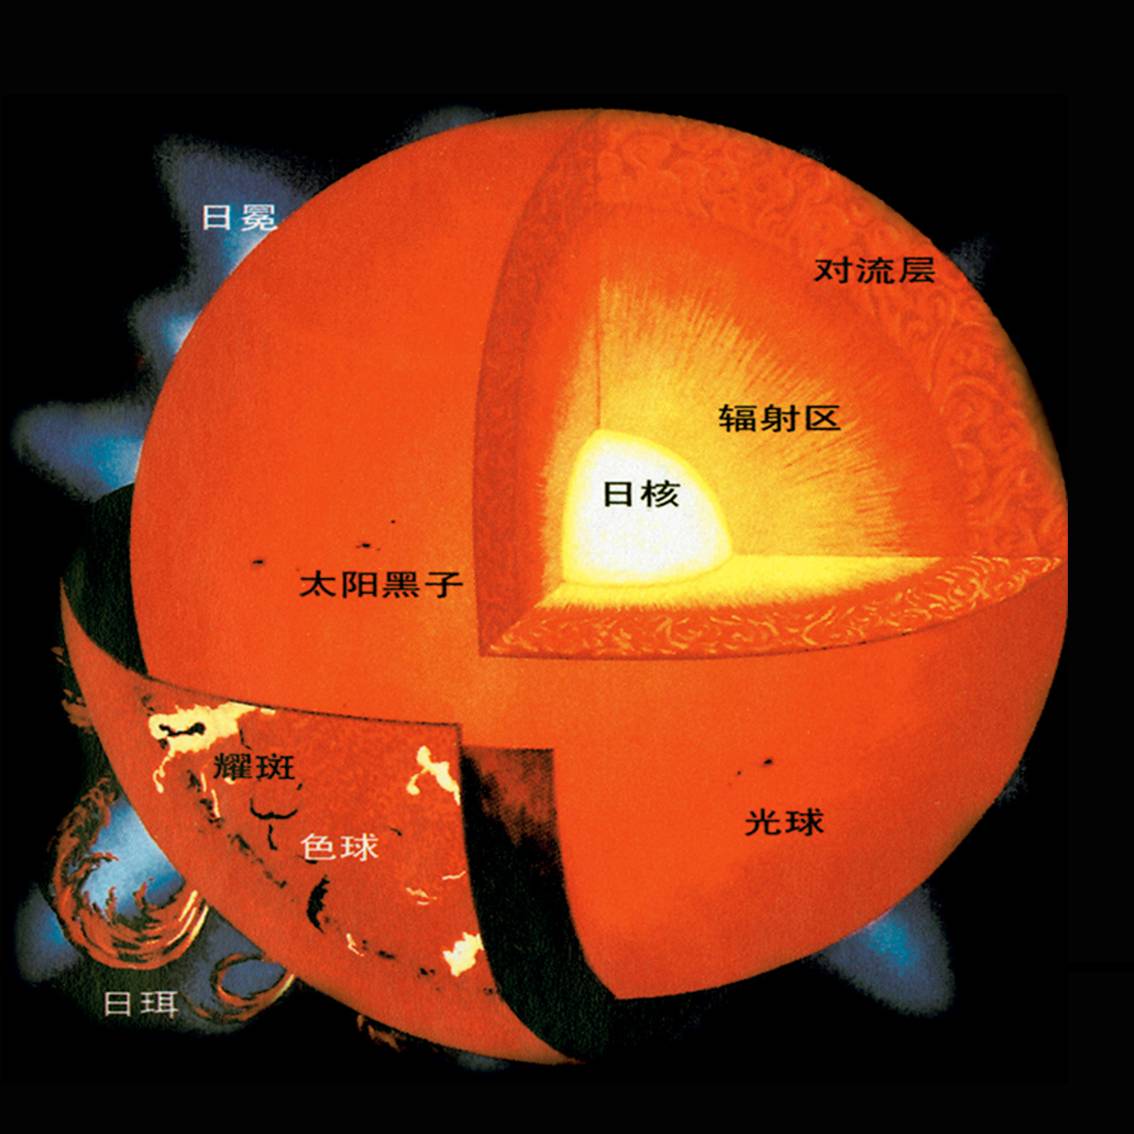 太阳内部结构示意图图片